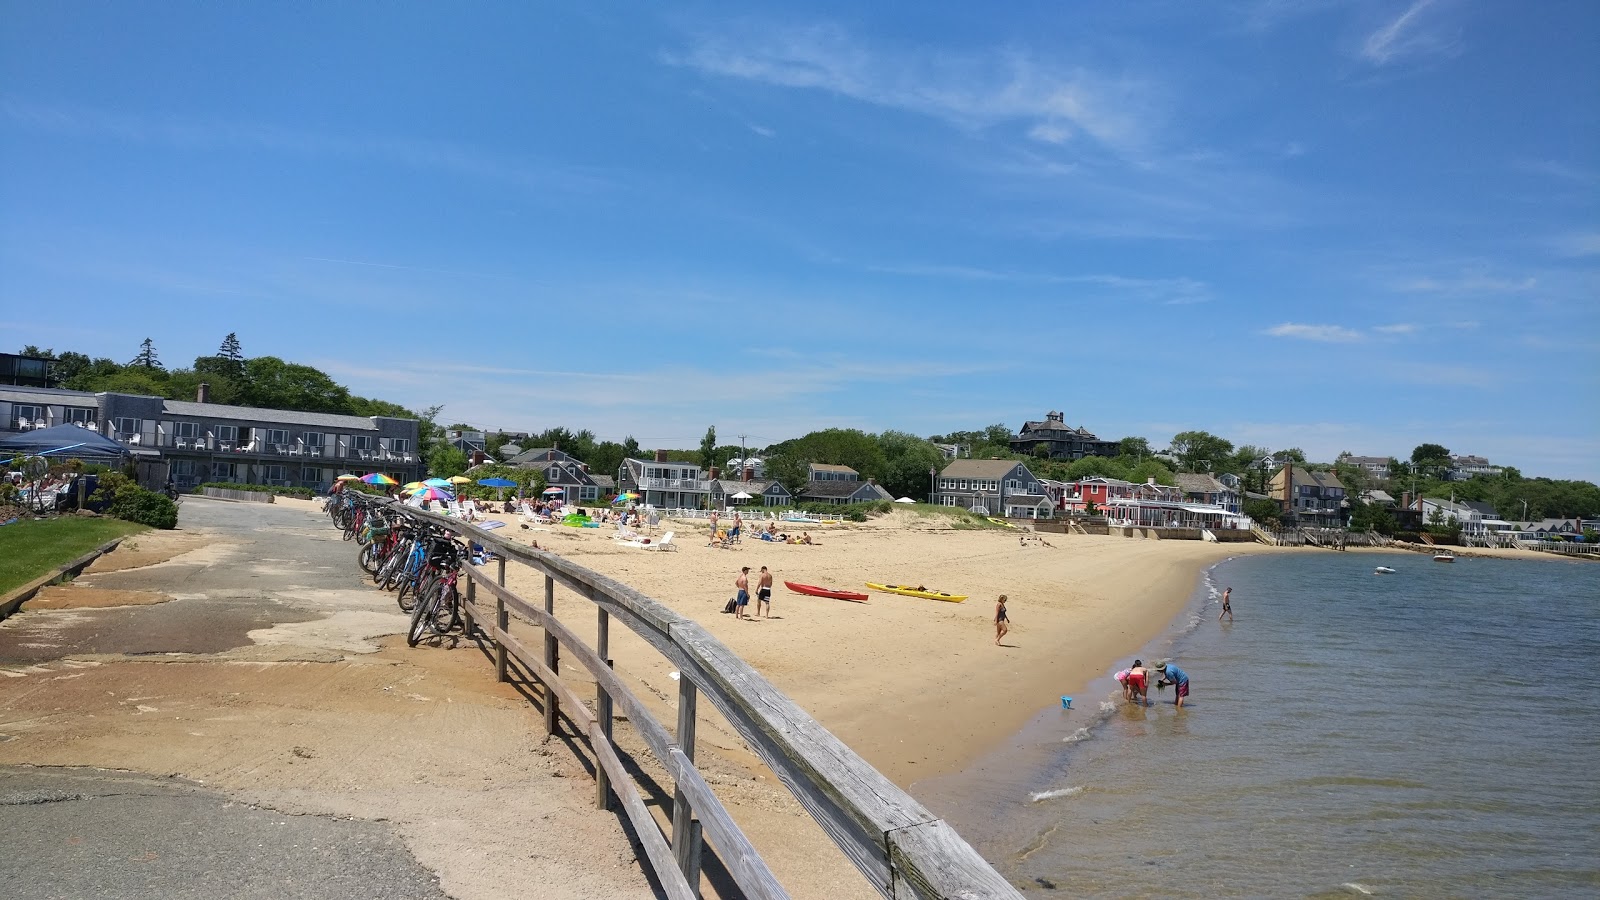 Provincetown beach'in fotoğrafı parlak kum yüzey ile